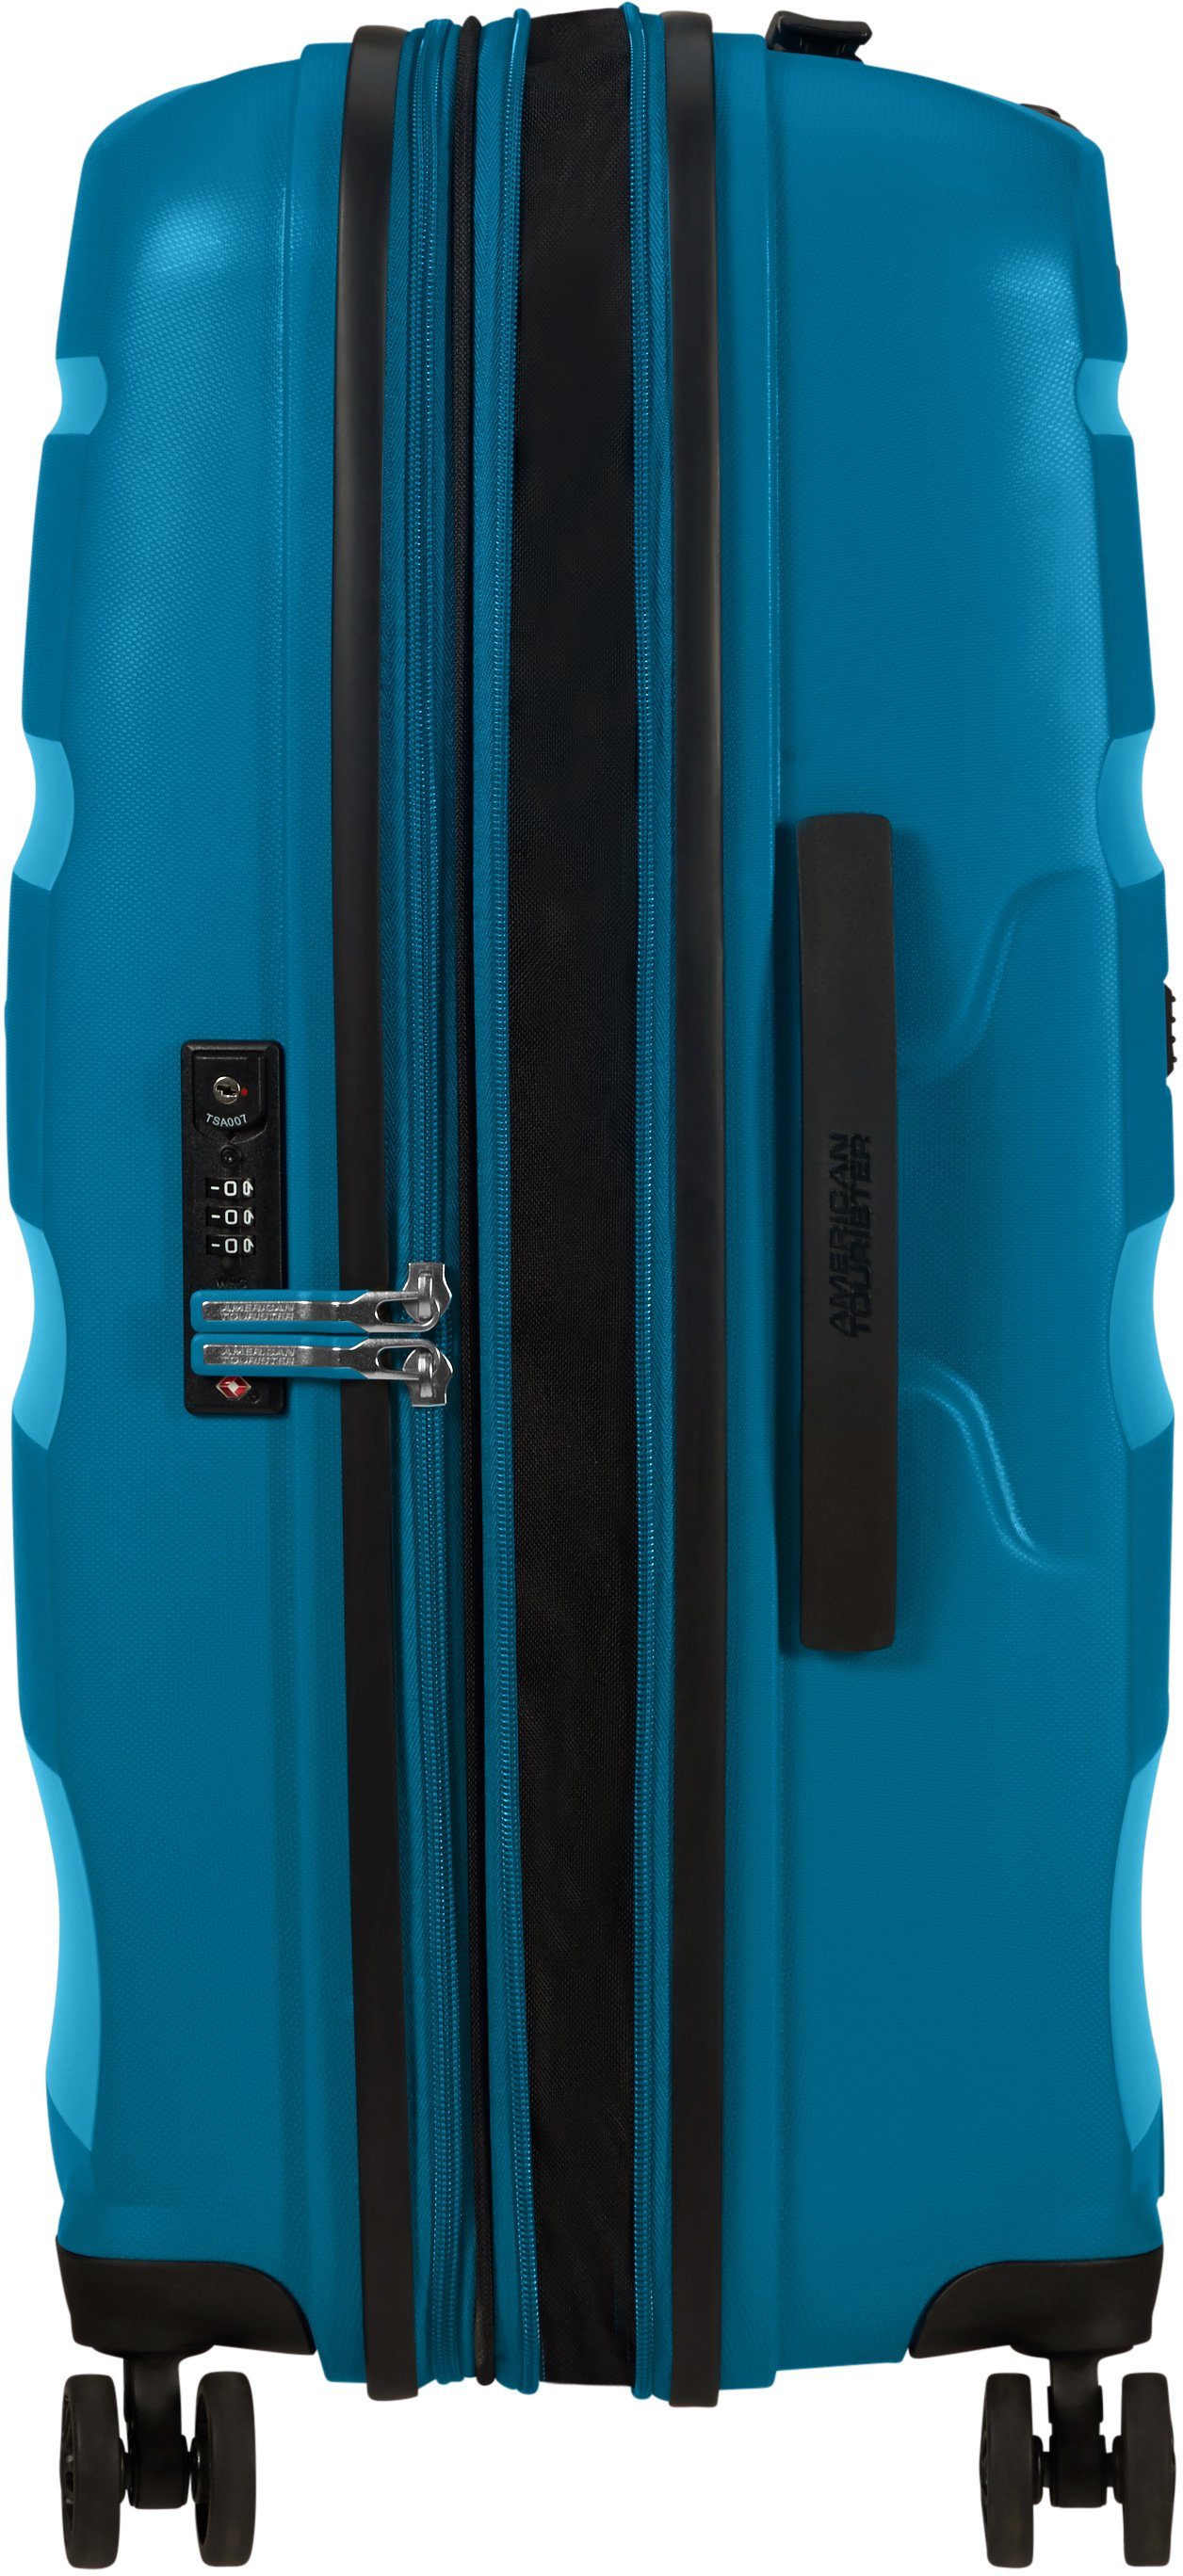 Hartschalen-Trolley Volumenerweiterung mit 66 DLX, 4 cm, American Blue Bon Rollen, Seaport Tourister® Air